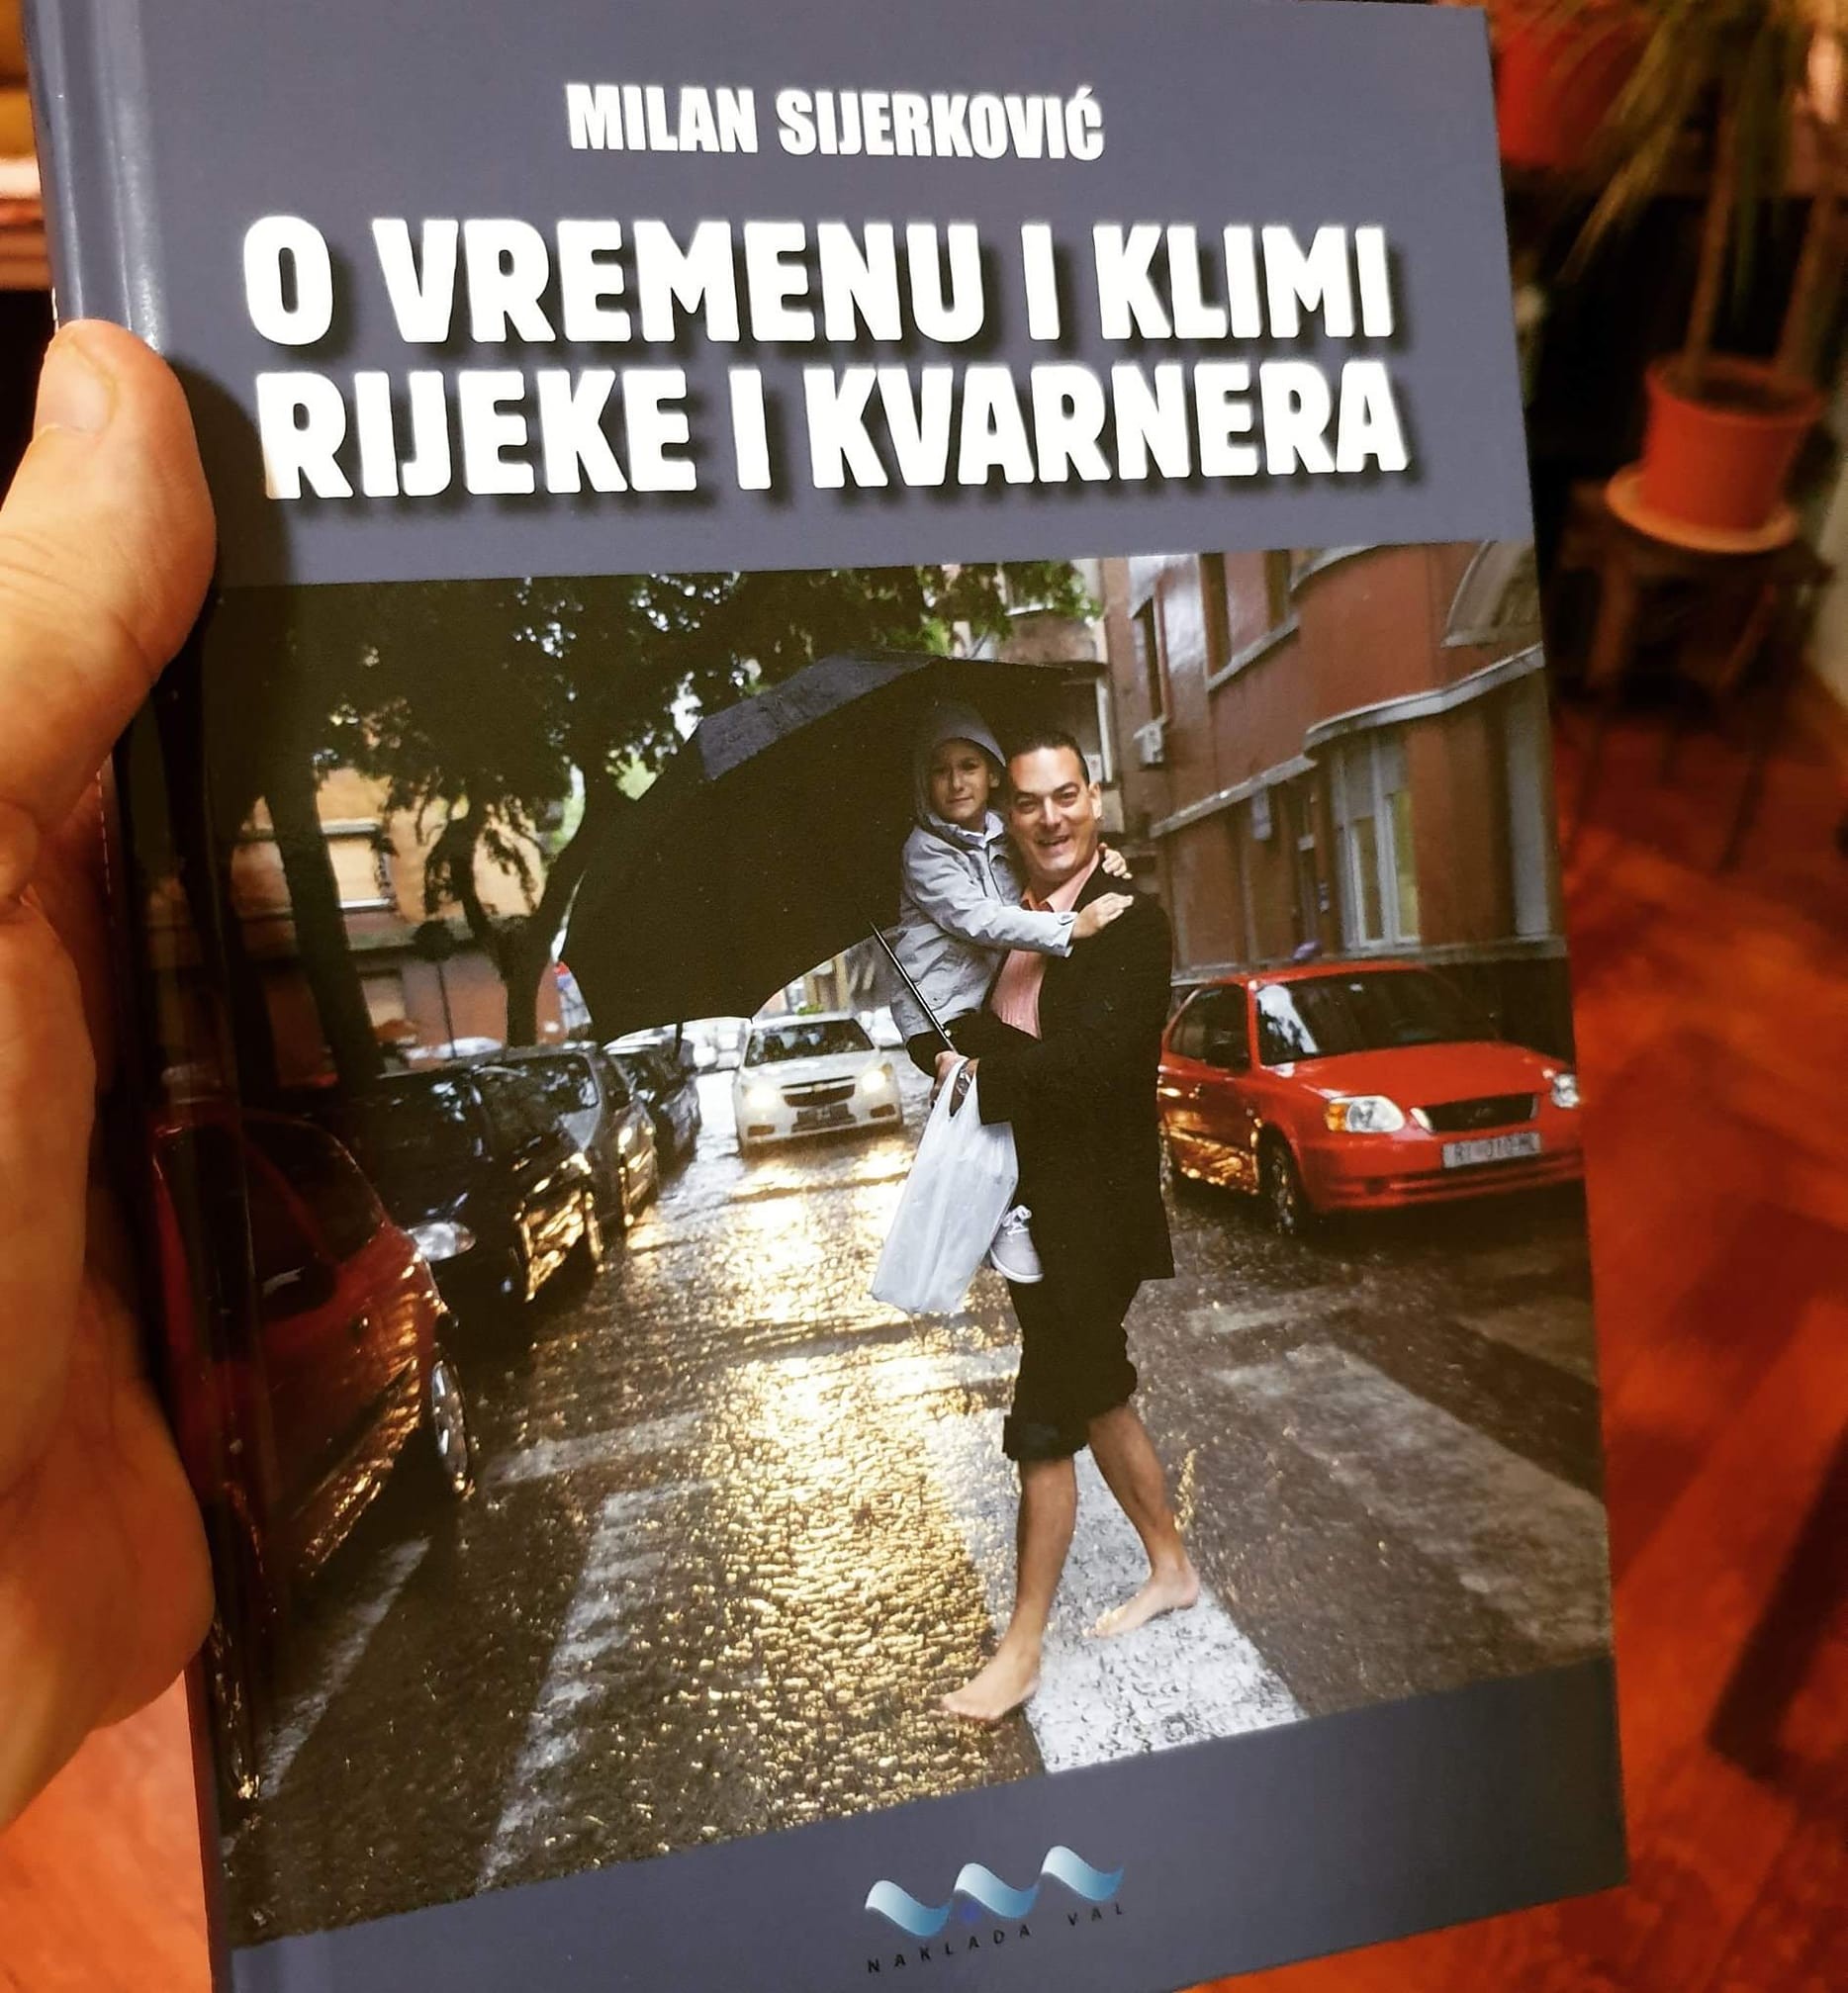 Milan Sijerković: O VREMENU I KLIMI RIJEKE I KVARNERA